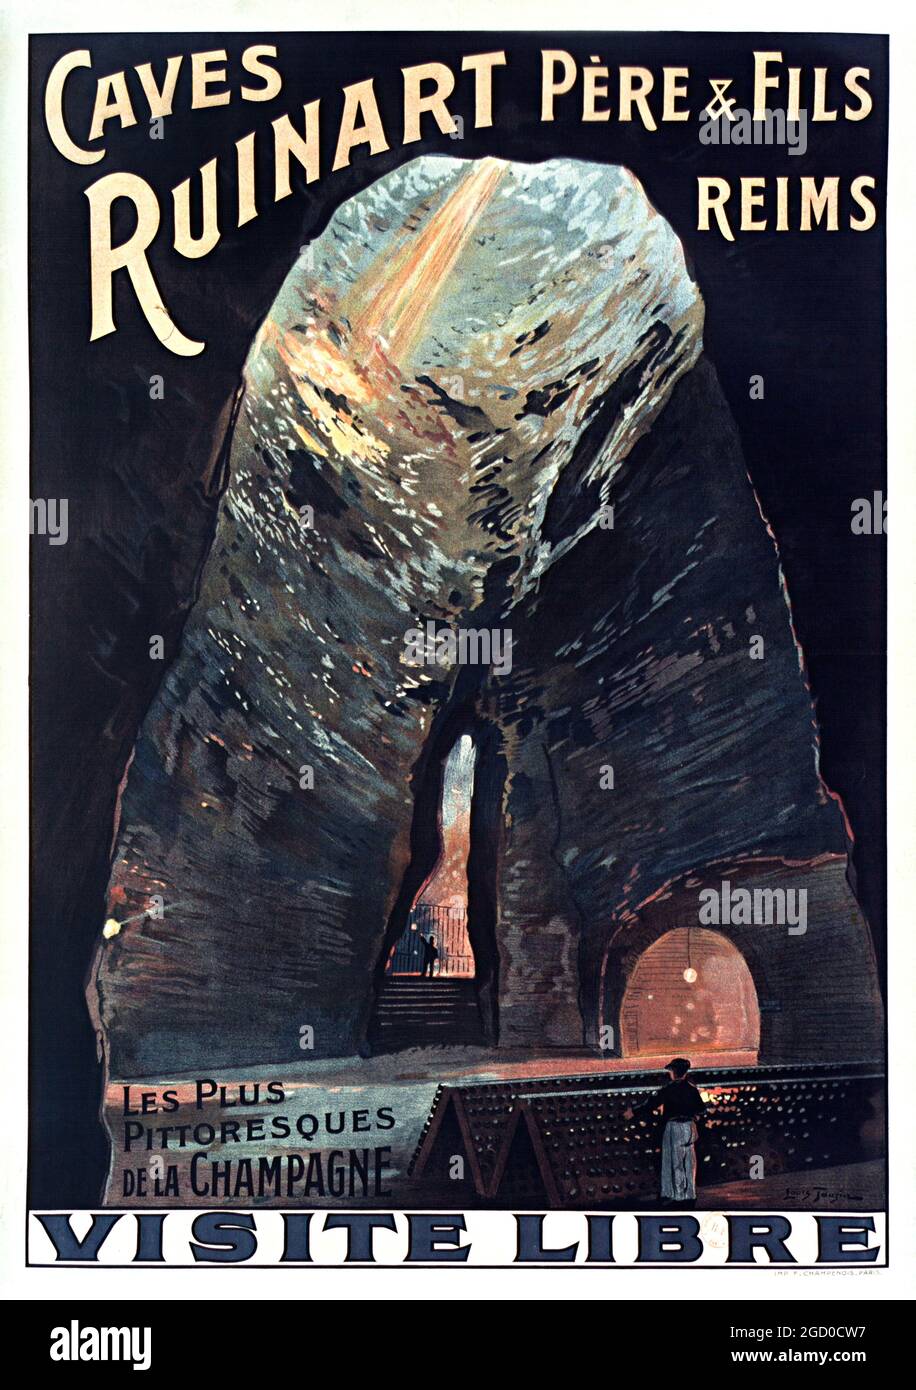 Grottes Ruinart Père & fils, Reims, les plus pittoresques de la Champagne. Oeuvre de Louis Tauzin 1914 (1842-1915). Visitez libre. Poster de voyage. Banque D'Images